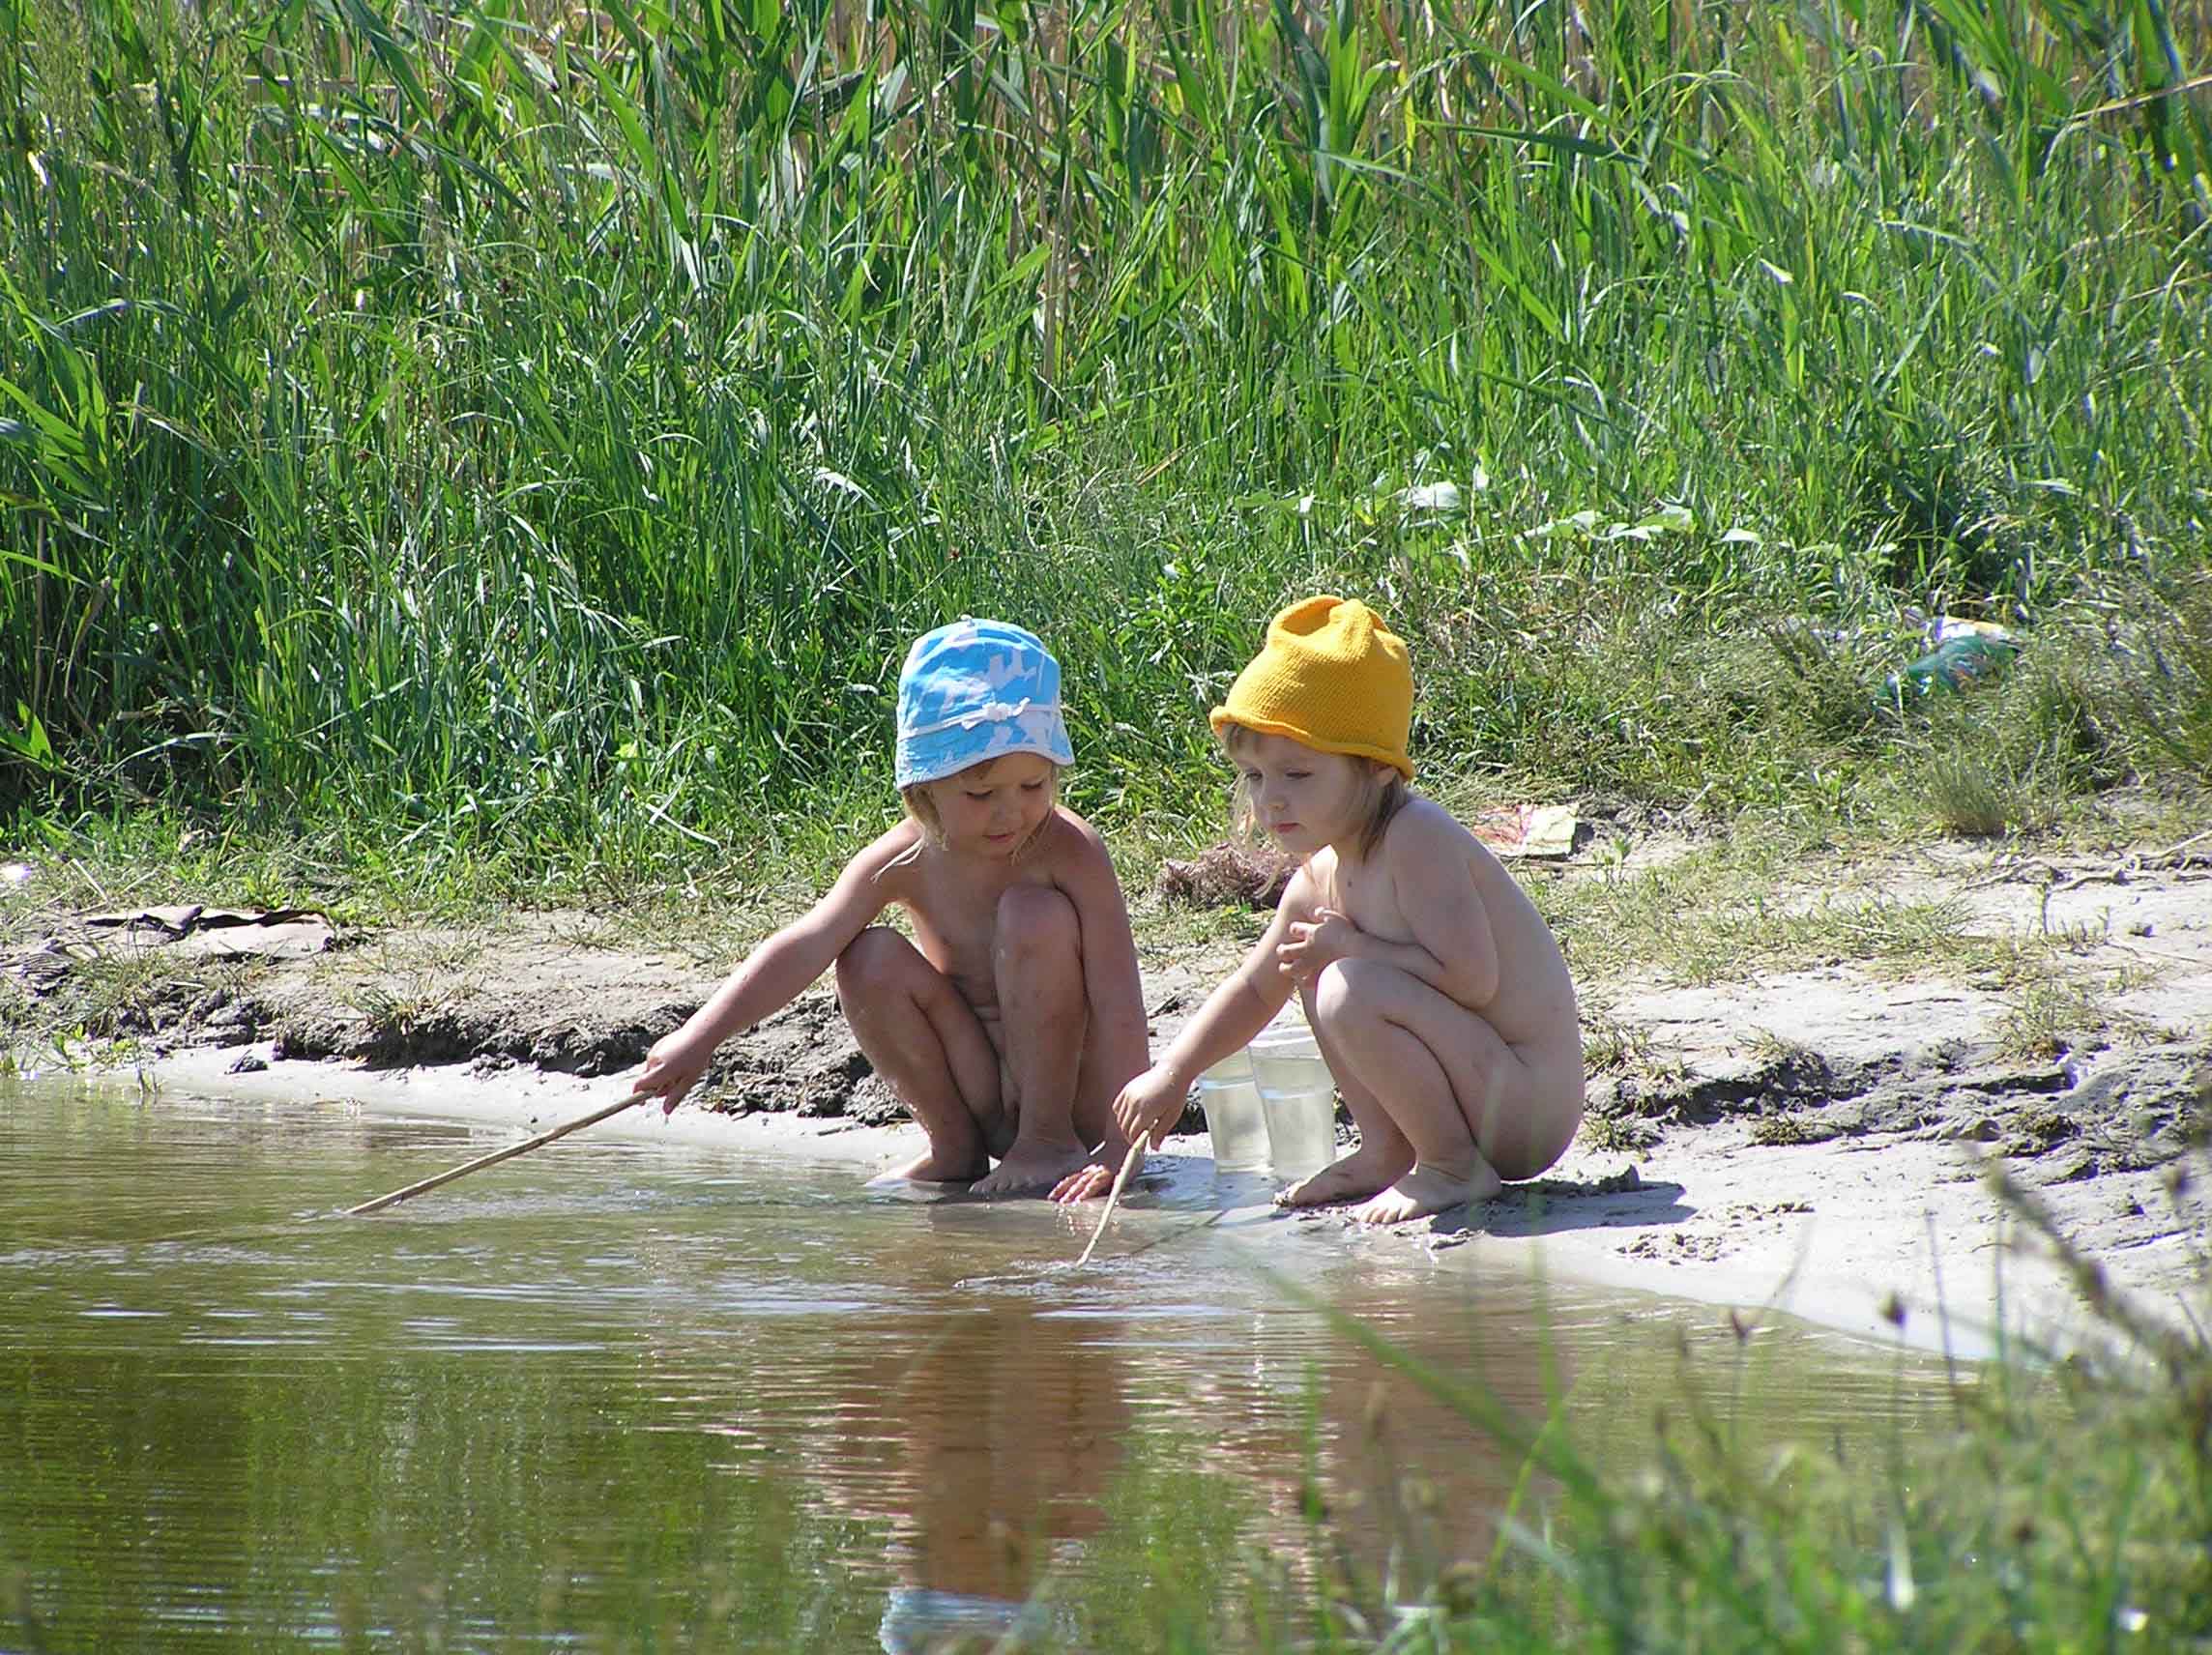 Само купание. Купание на даче. Маечик купаеча в речке. Купаемся на даче. Дети на даче купаются в речке.